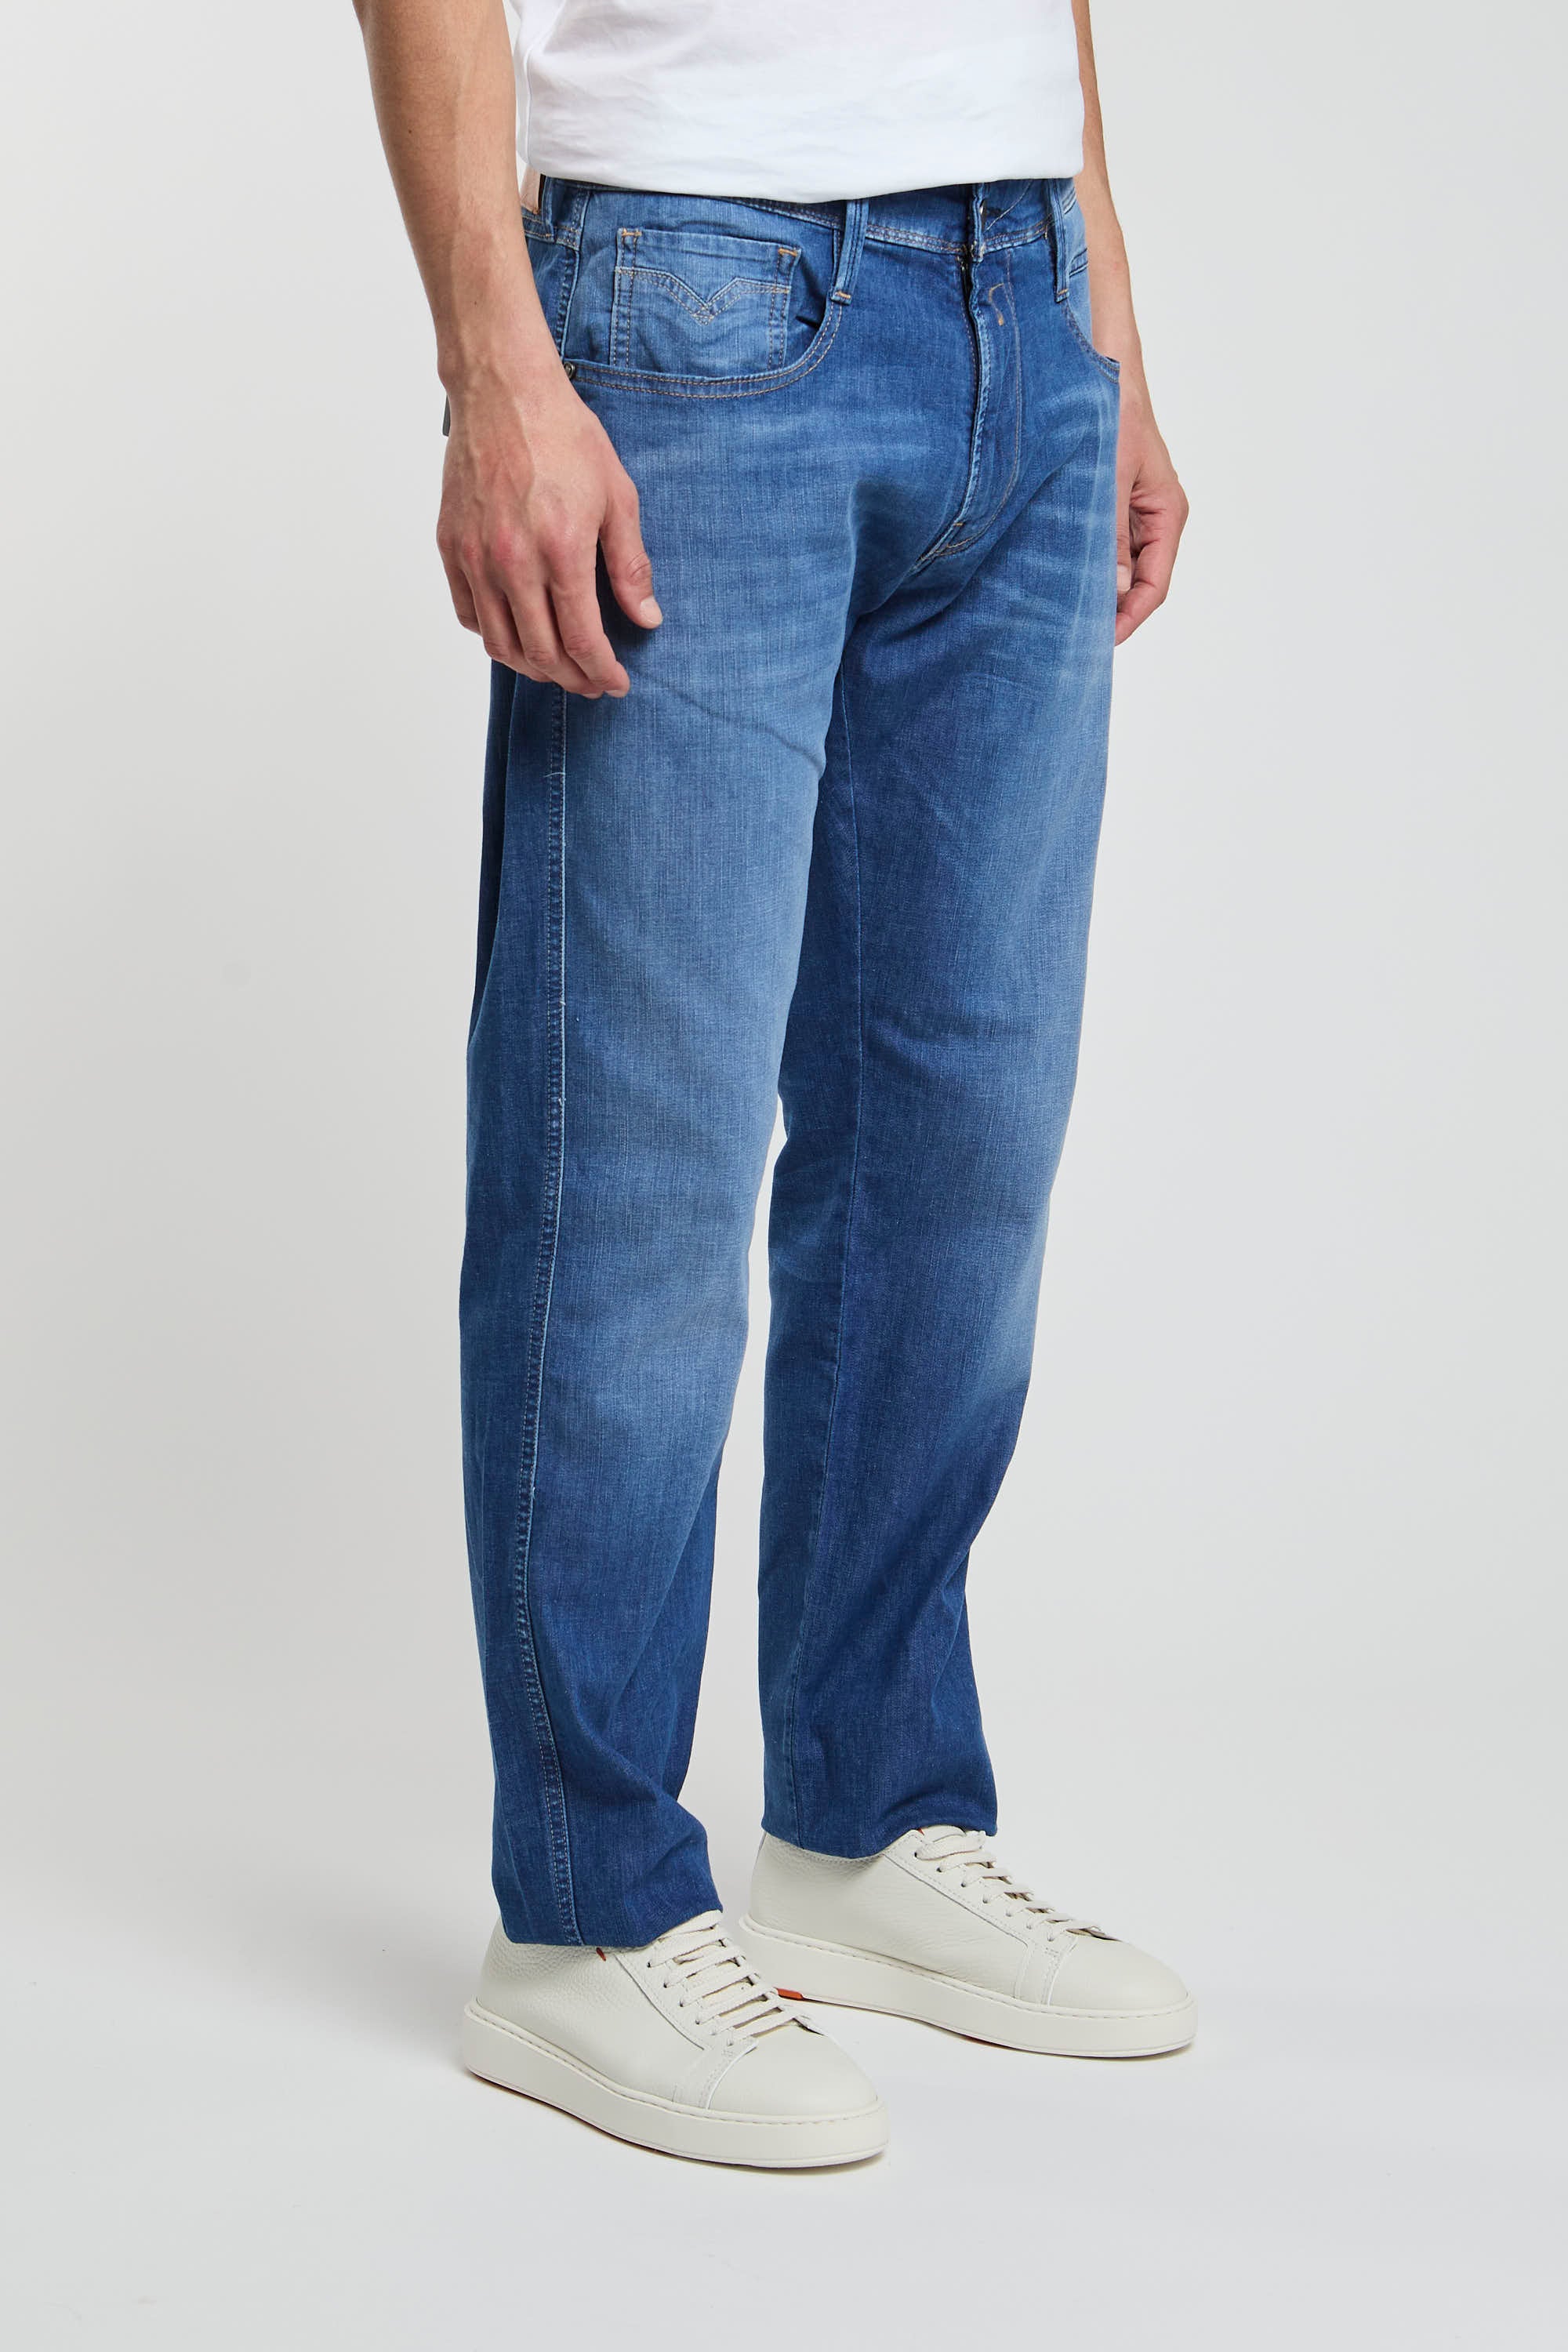 Replay Jeans Slim Fit aus Denim in Baumwolle/Lyocell/Elastomultiester/Elasthan-3